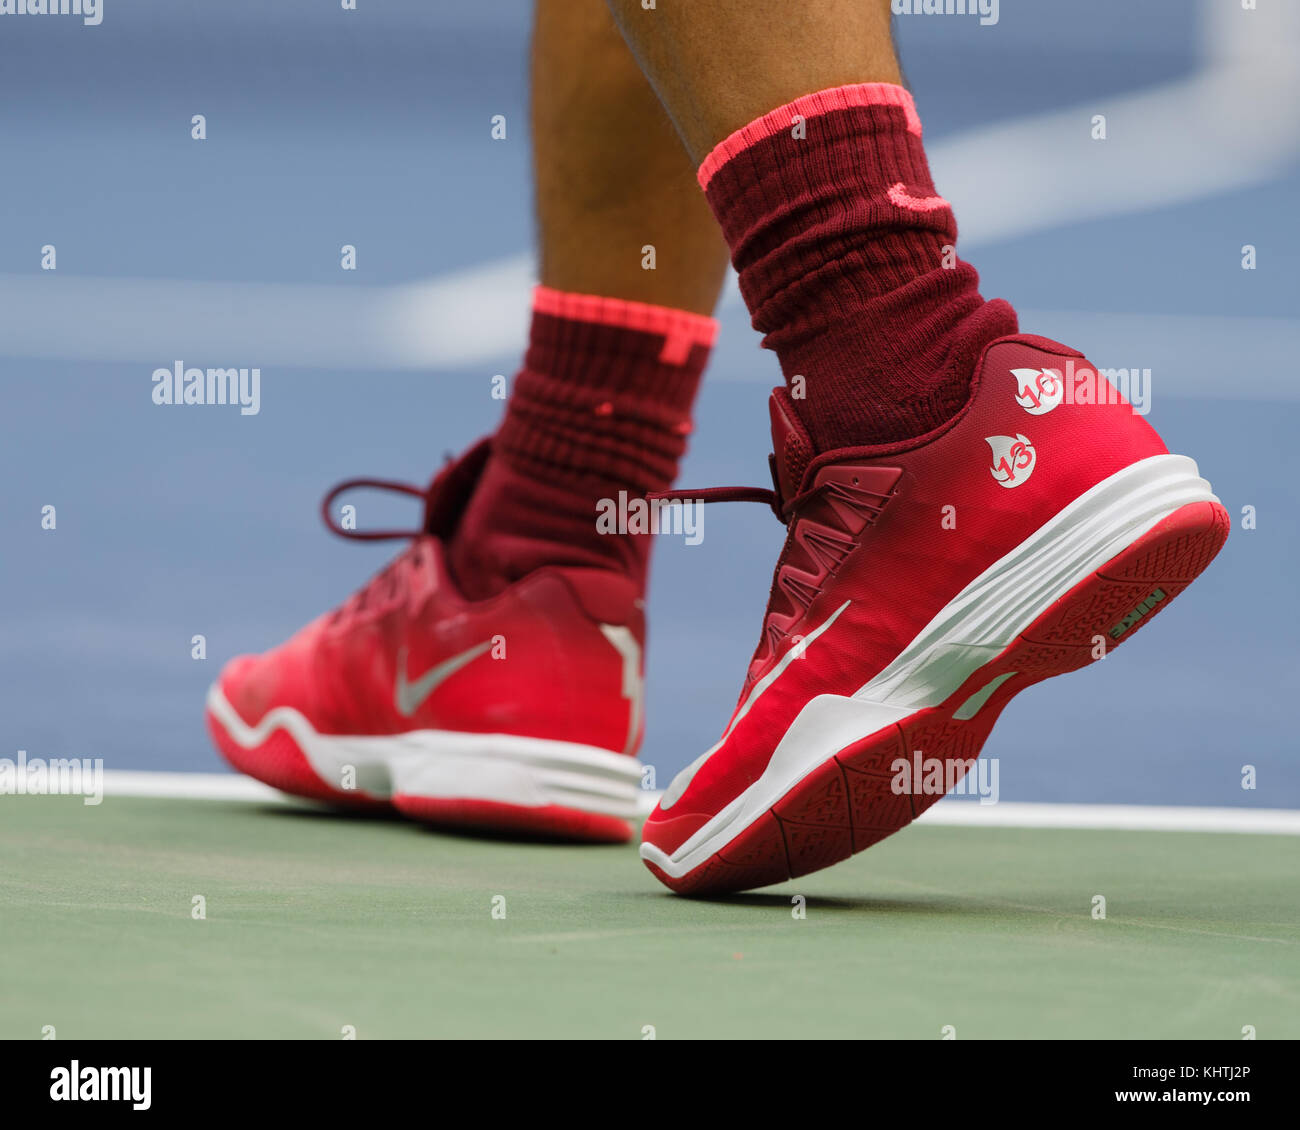 Scarpa da tennis immagini e fotografie stock ad alta risoluzione - Alamy